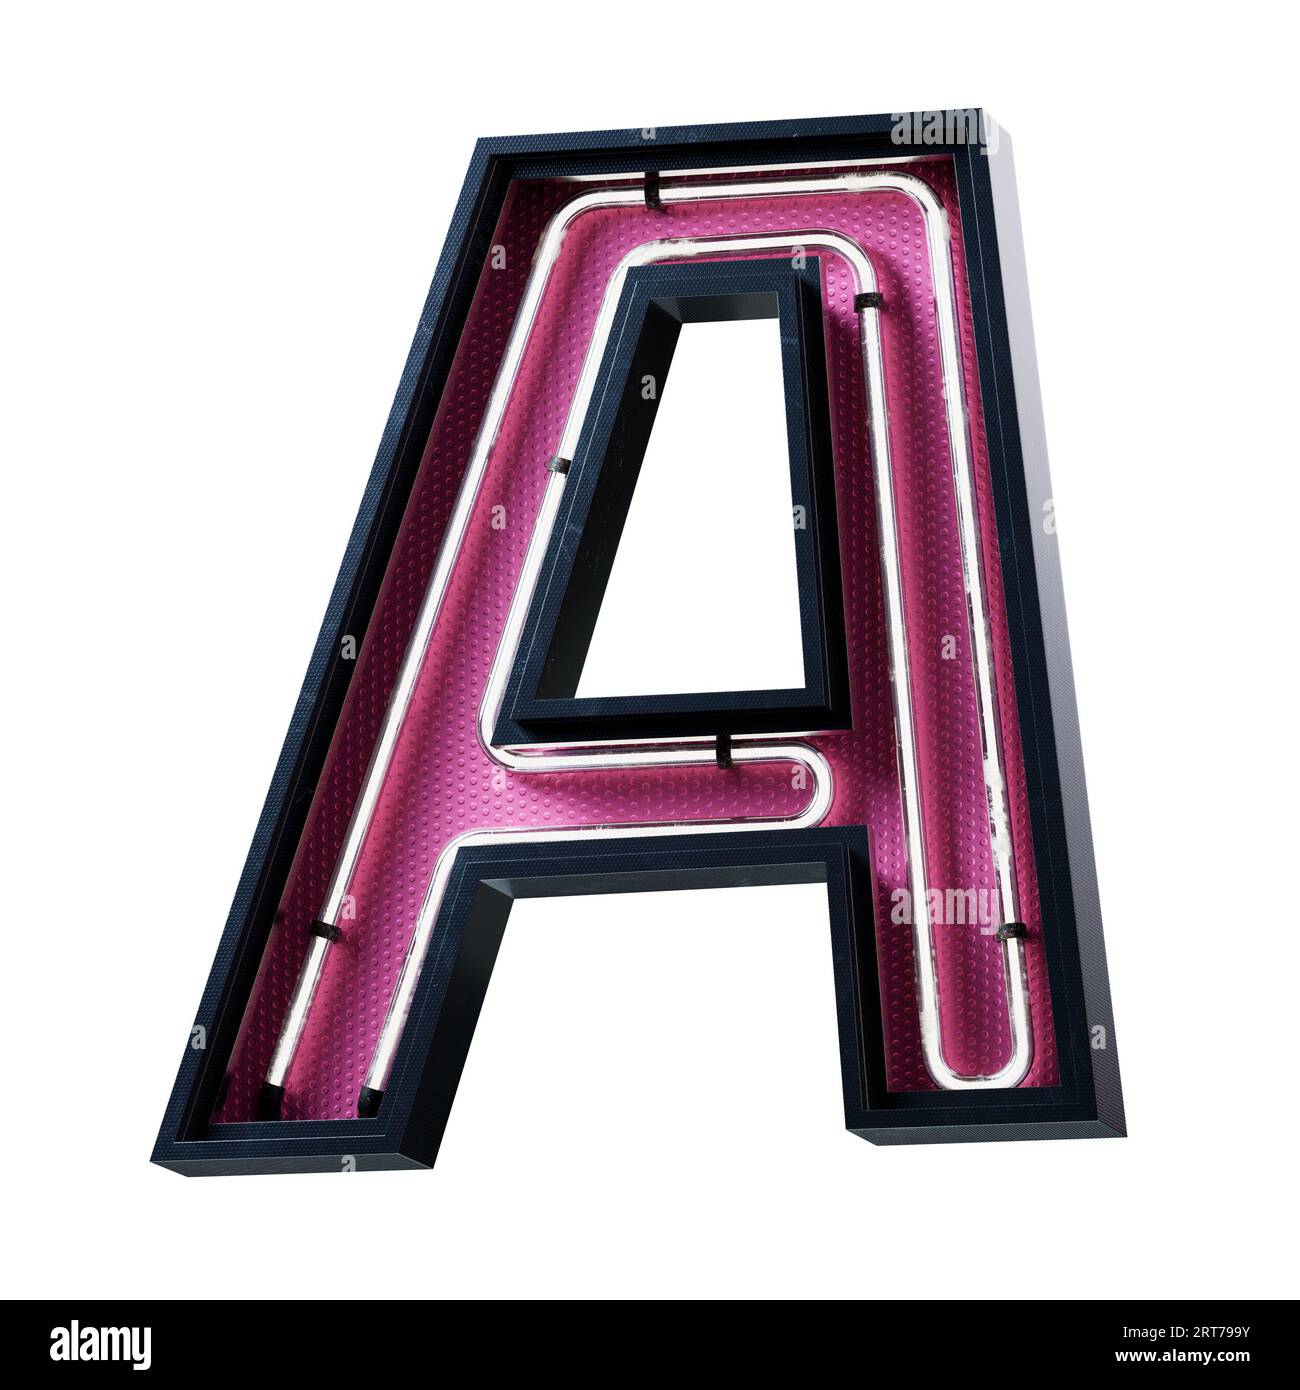 Illustration 3D de la lettre majuscule de l'alphabet blanc néon clair. Tube néon lettre majuscule effet luisant blanc dans une boîte en métal noir avec botto rose Banque D'Images